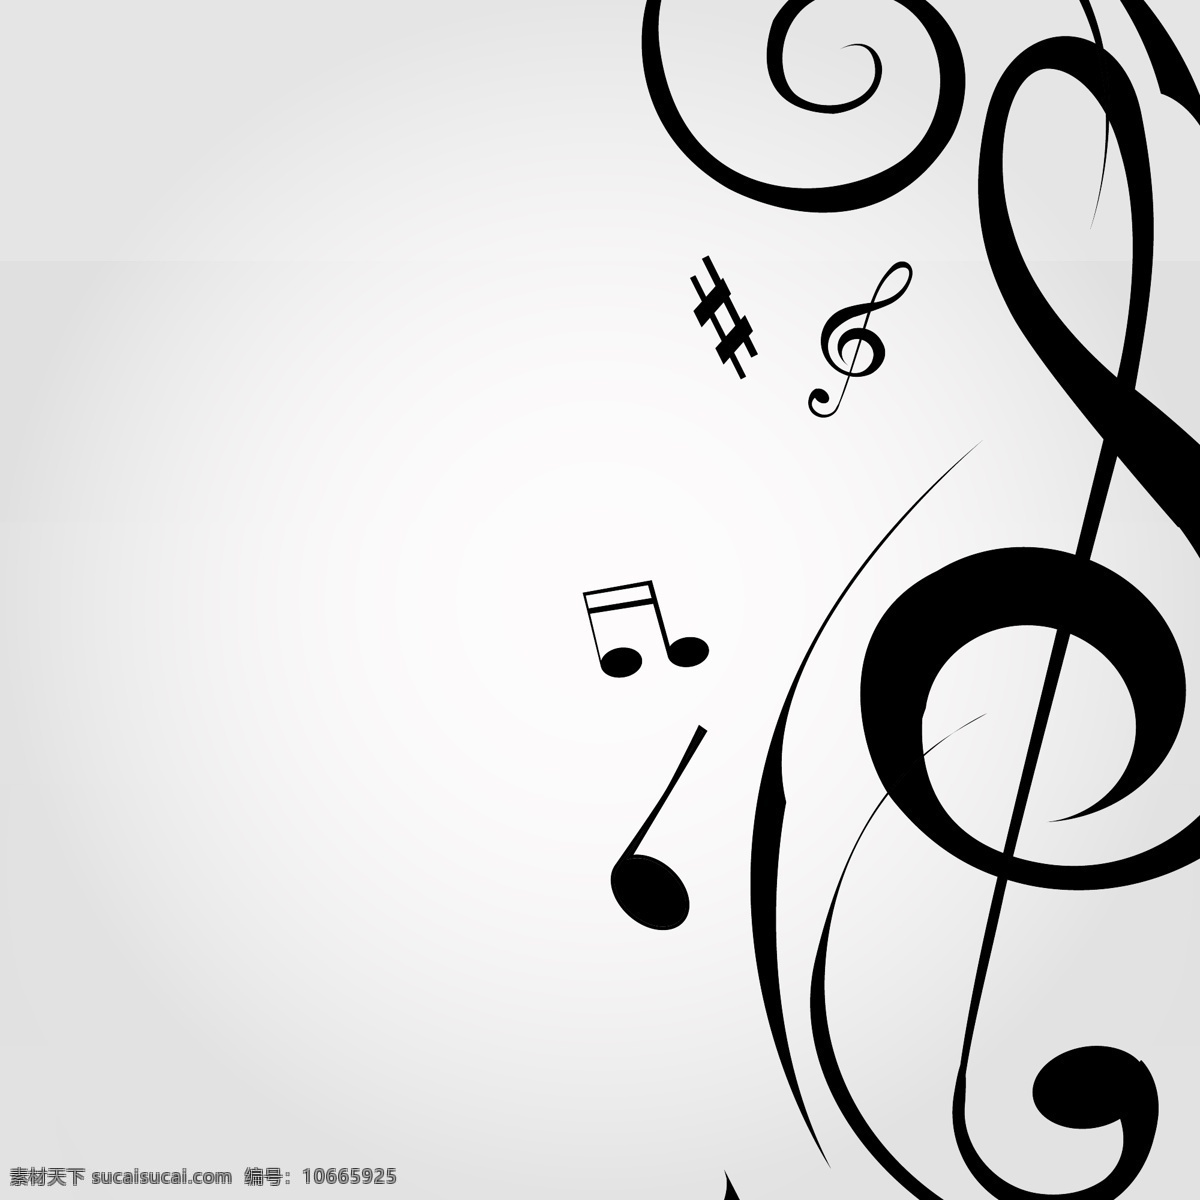 音乐 动感音符 音乐符号 跳动的音乐 音乐背景 音乐海报 音乐比赛 音乐表演 音乐演出 舞蹈音乐 文化艺术 矢量